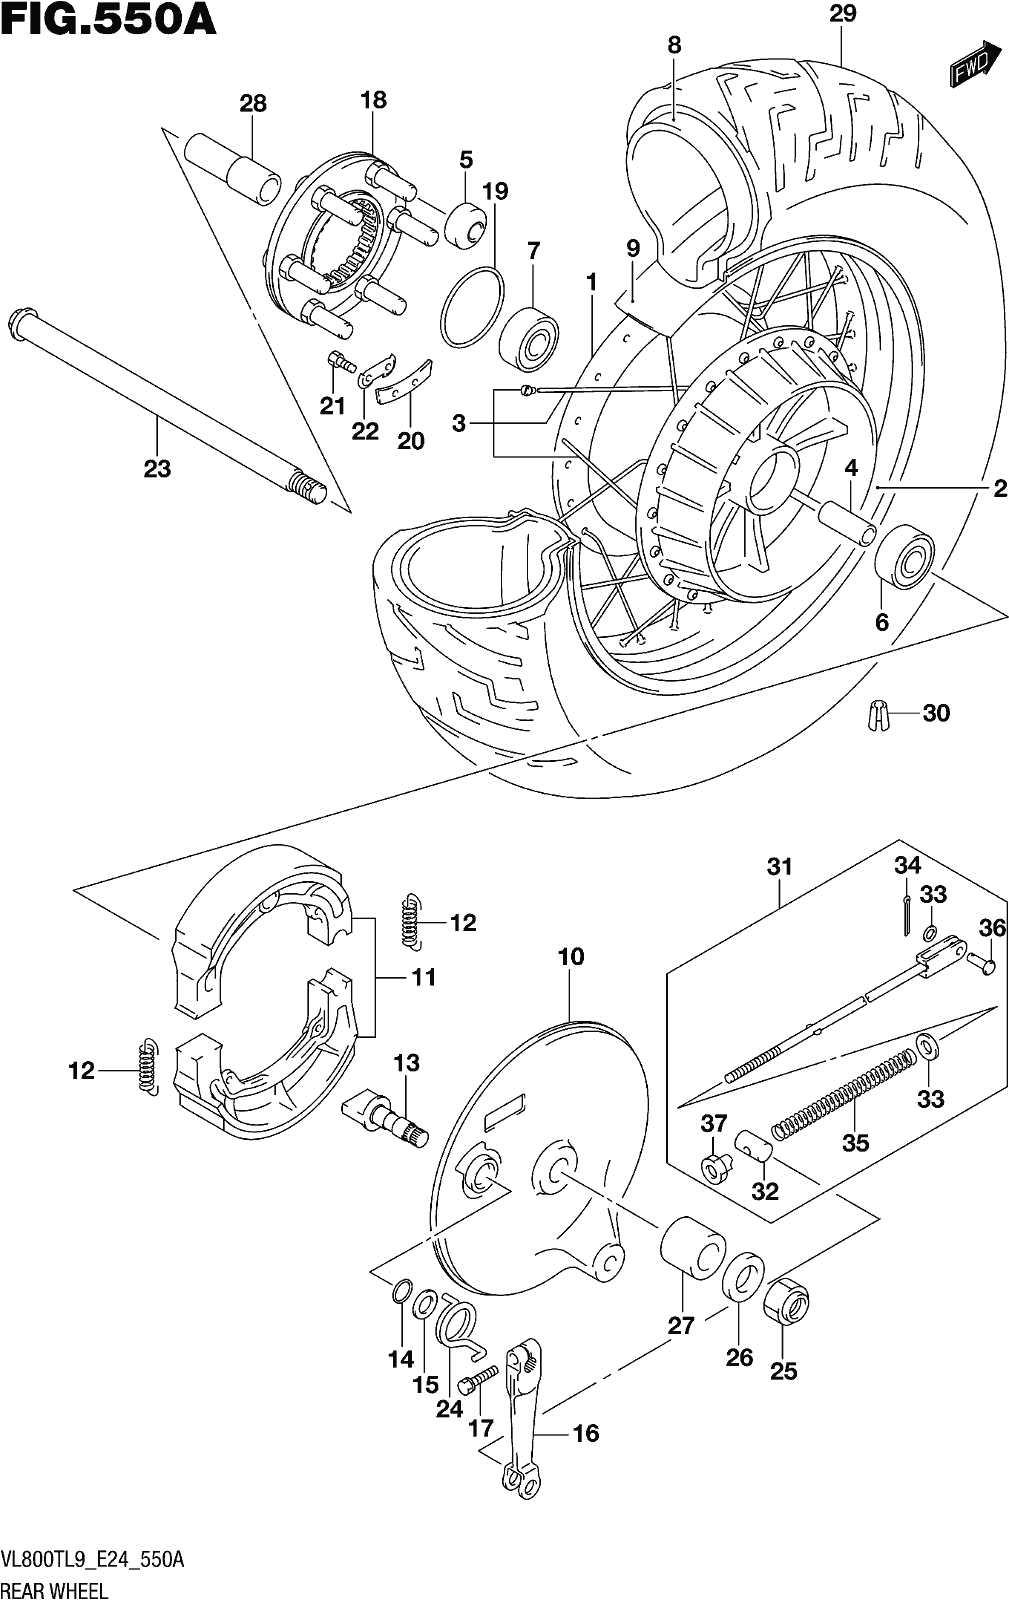 Alle Teile für das Fig. 550a Rear Wheel des Suzuki VL 800T 2019